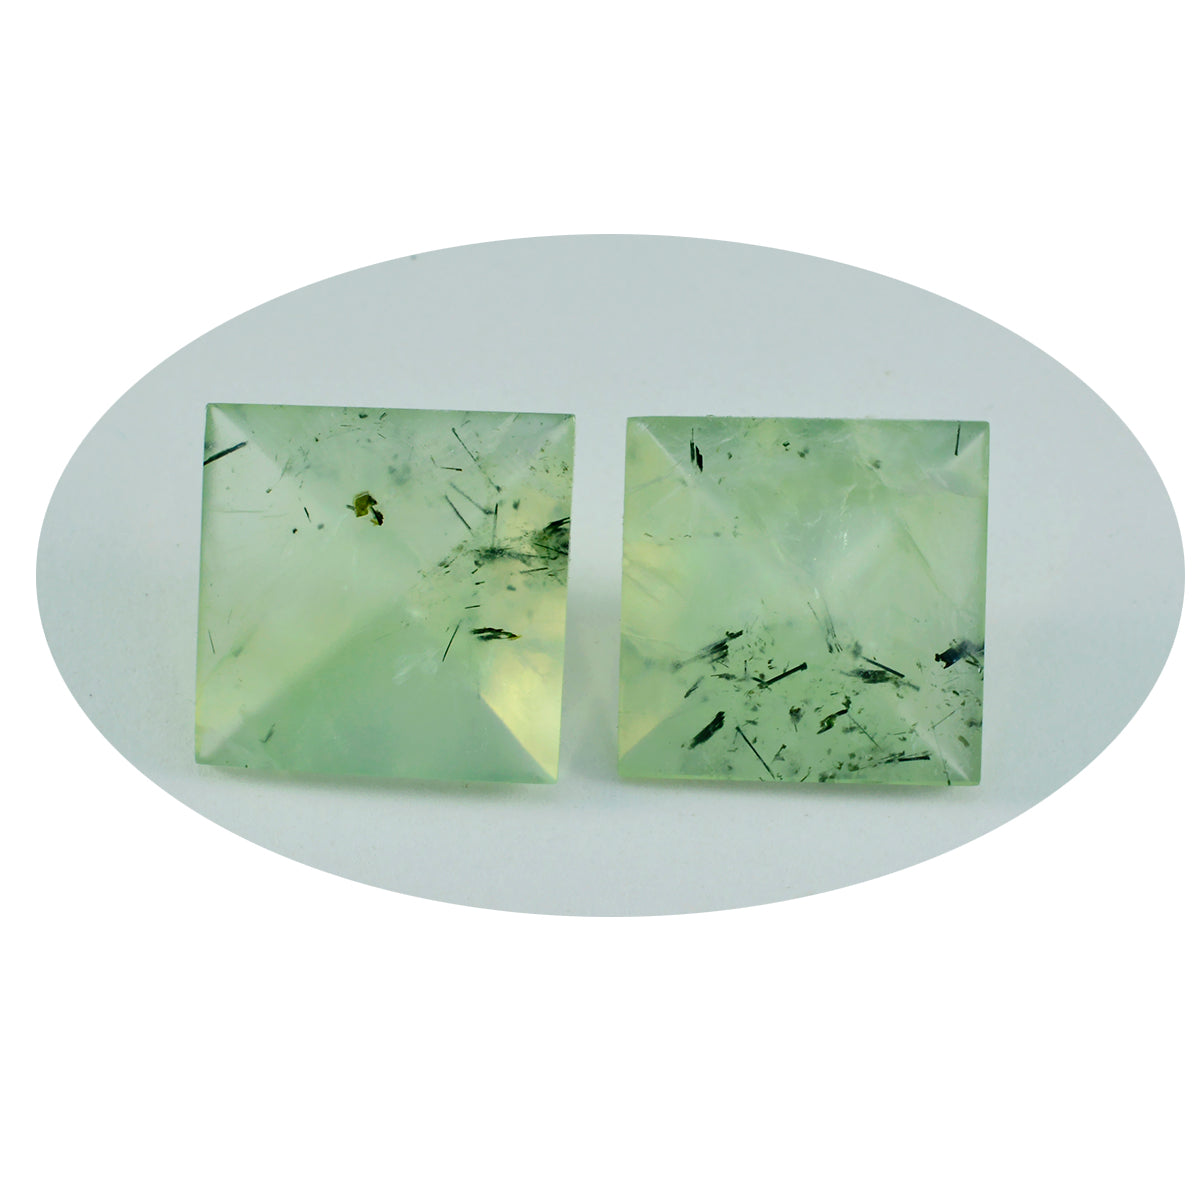 riyogems 1 pieza de prehnita verde facetada de 15x15 mm con forma cuadrada, piedra preciosa de calidad fantástica